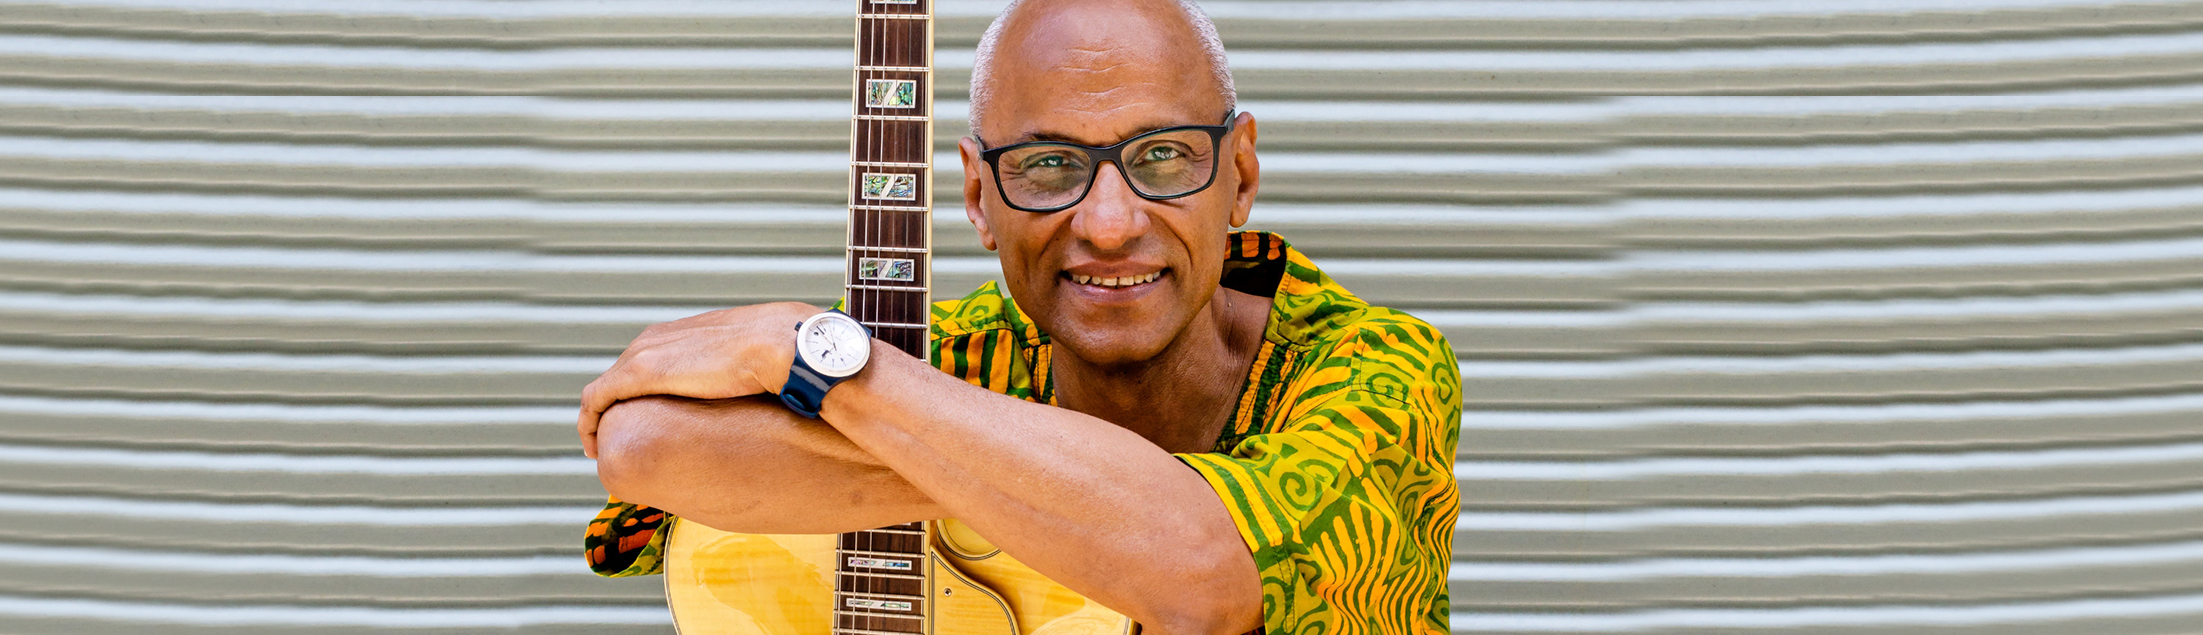 Cláudio Jorge lança disco comemorativo pelos 70 anos em show dia 12/07, no Centro da Música Carioca